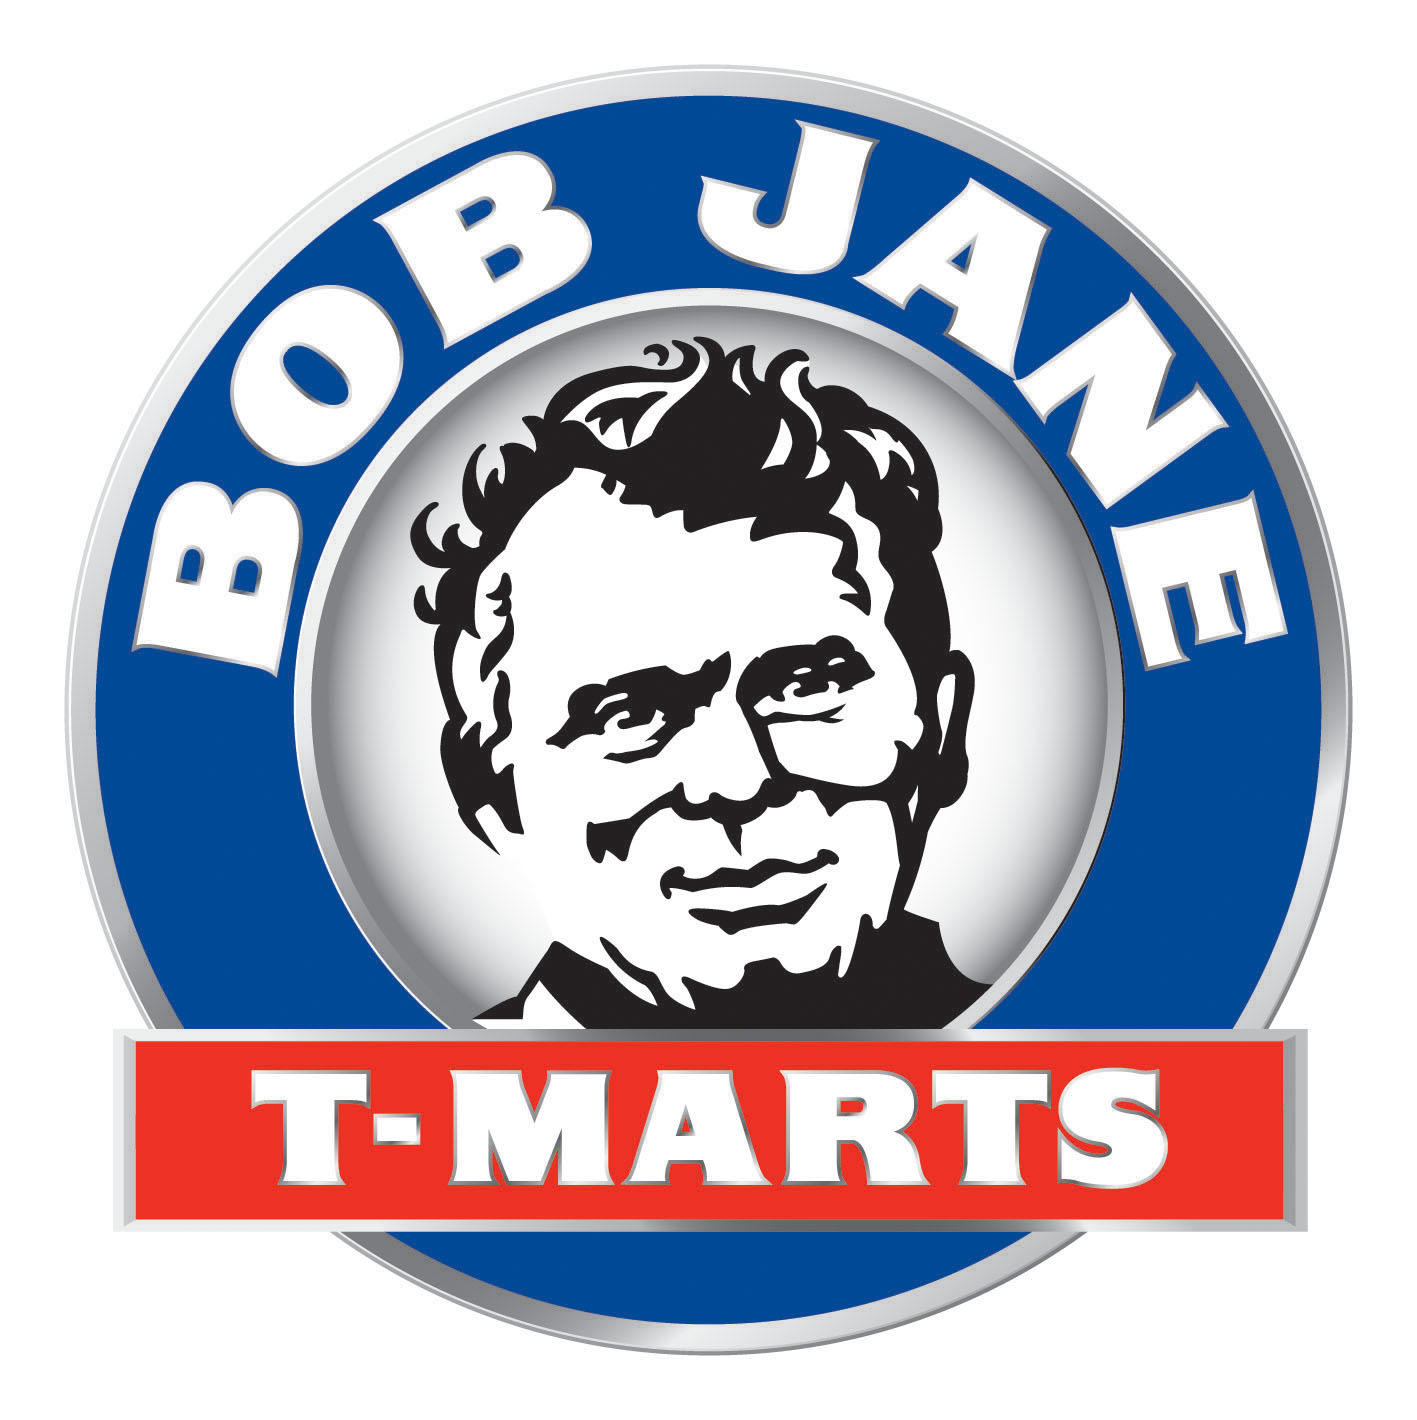 Bob Jane T-Marts Albany Centennial Park (08) 6821 1600